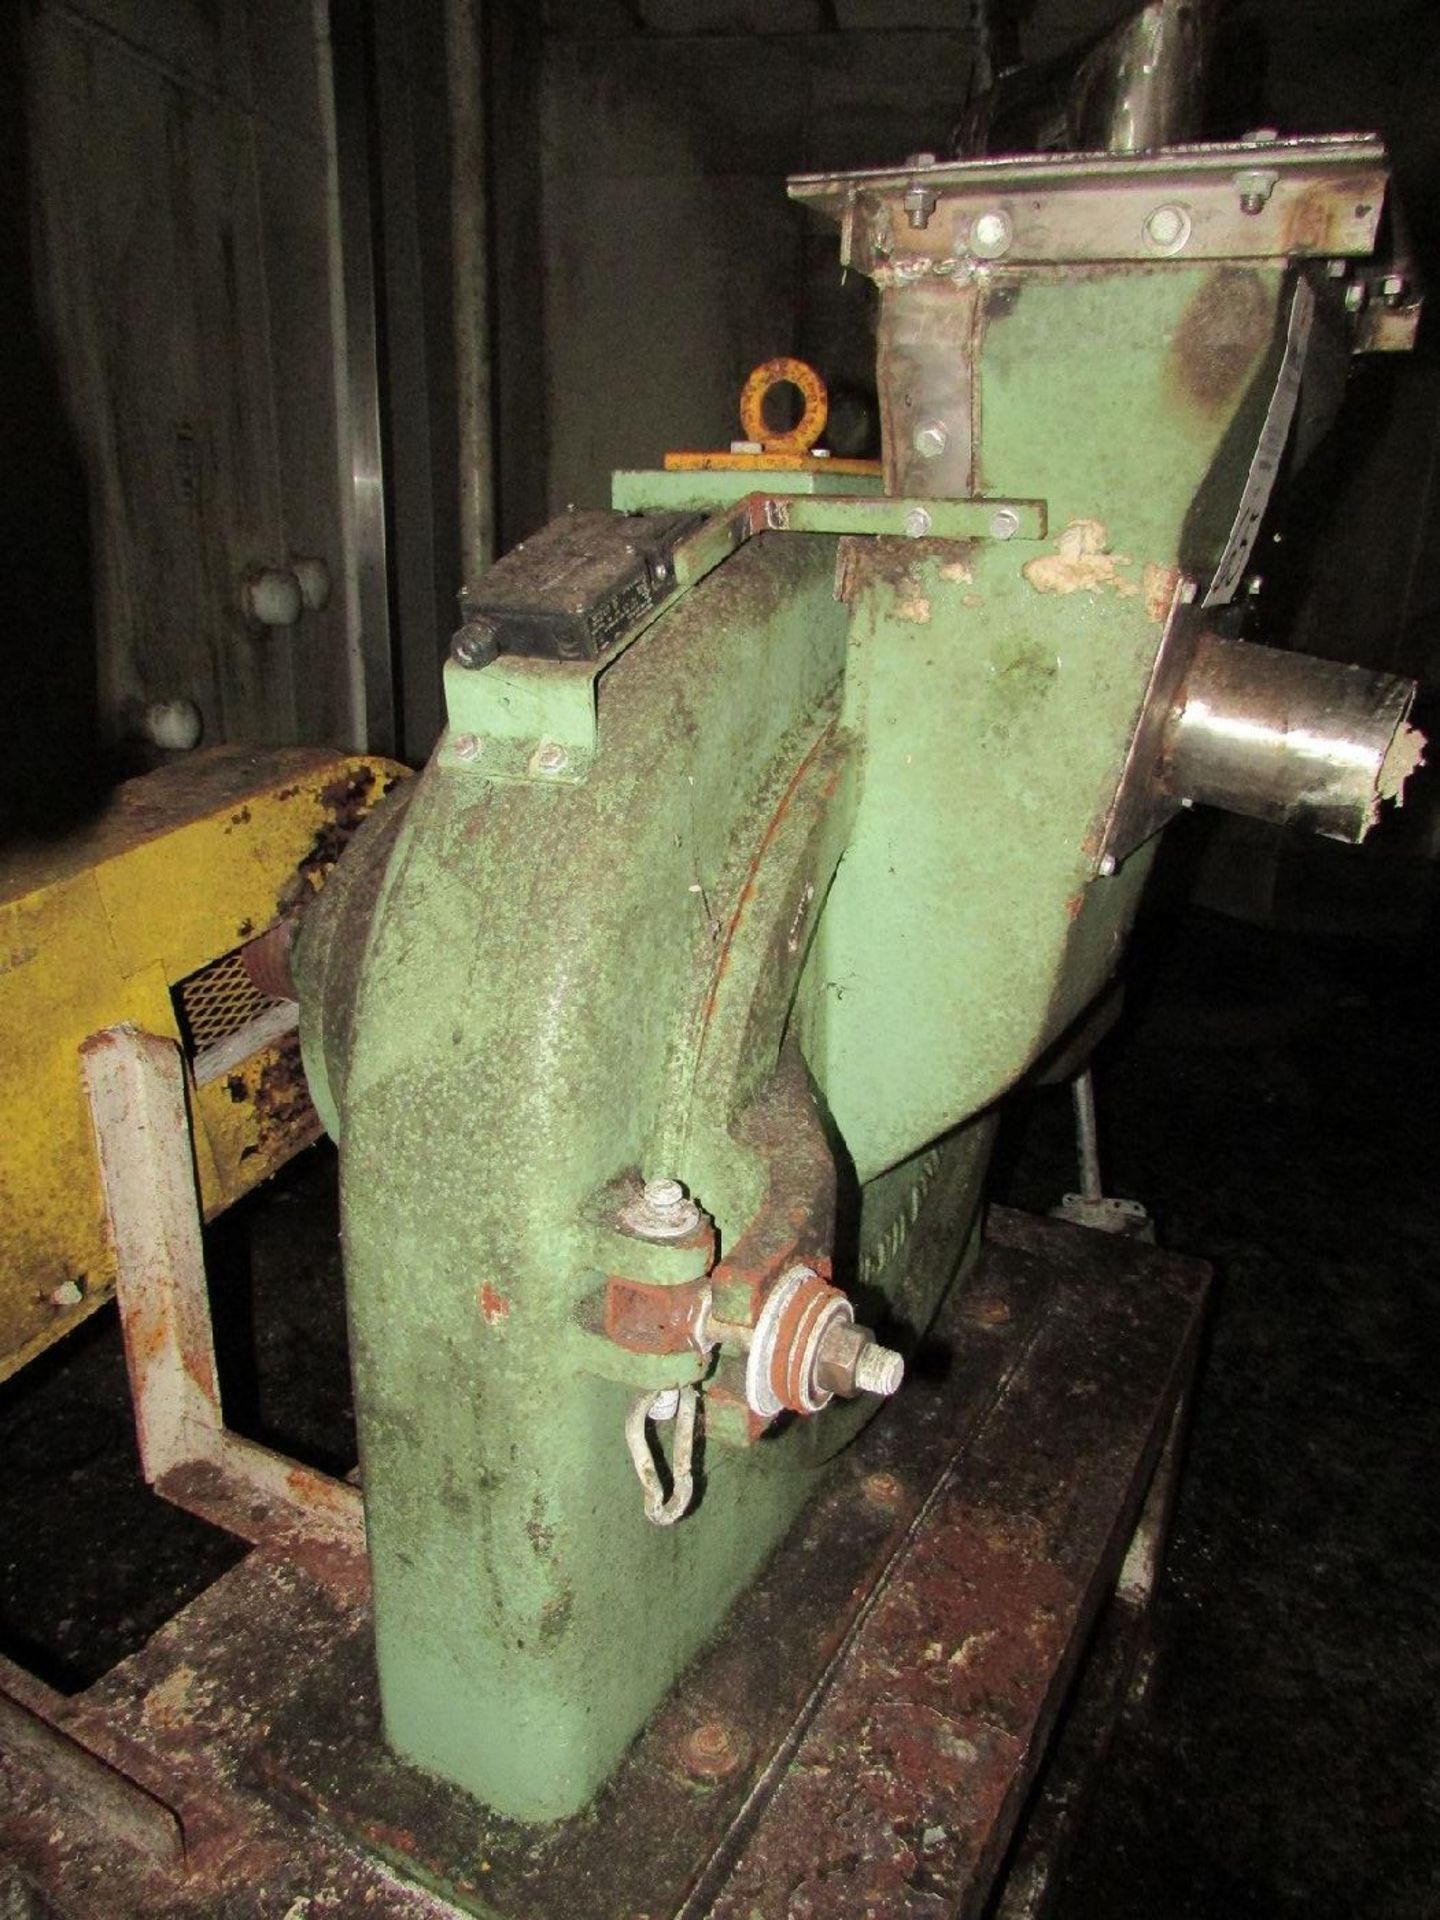 Italo Danioni-Milano Model 524 Pin Mill (Processing) - Image 6 of 6